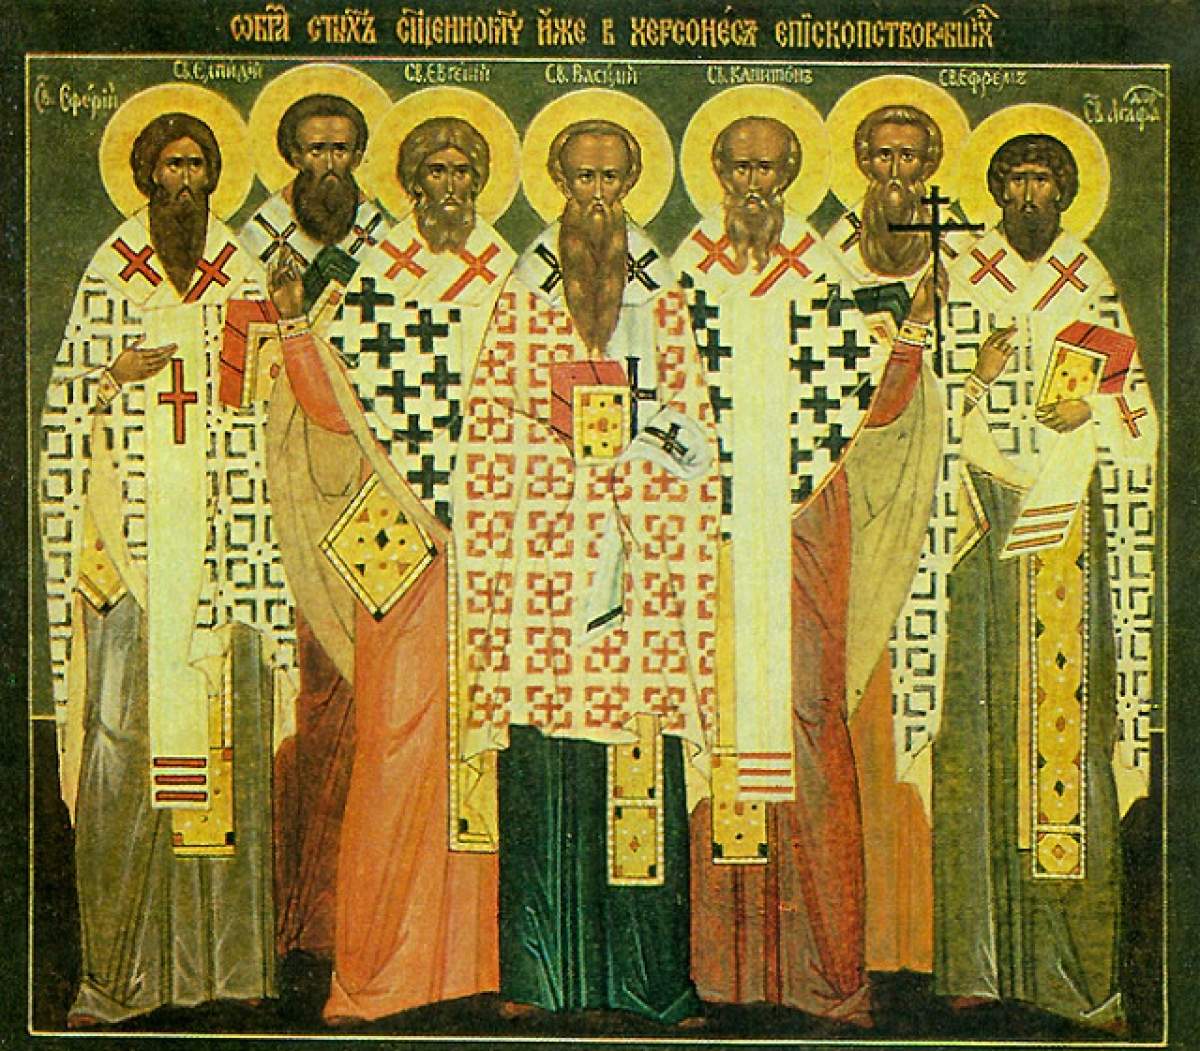 Zi de sărbătoare pentru creştinii ortodocşi! Ce rugăciune trebuie să spui pentru căsătorie şi sănătate